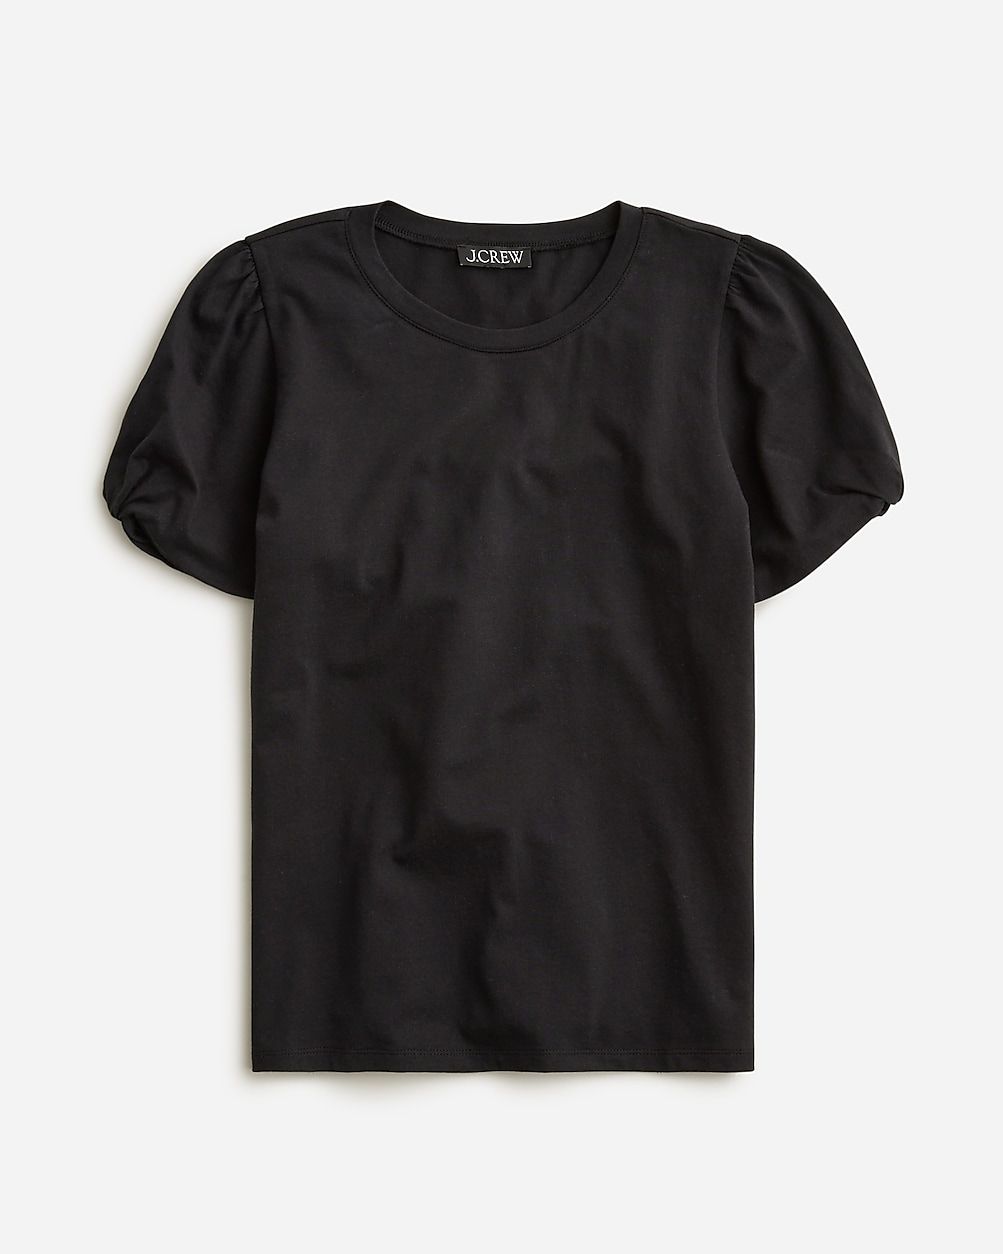 Broken-in jersey puff-sleeve T-shirt | J.Crew US